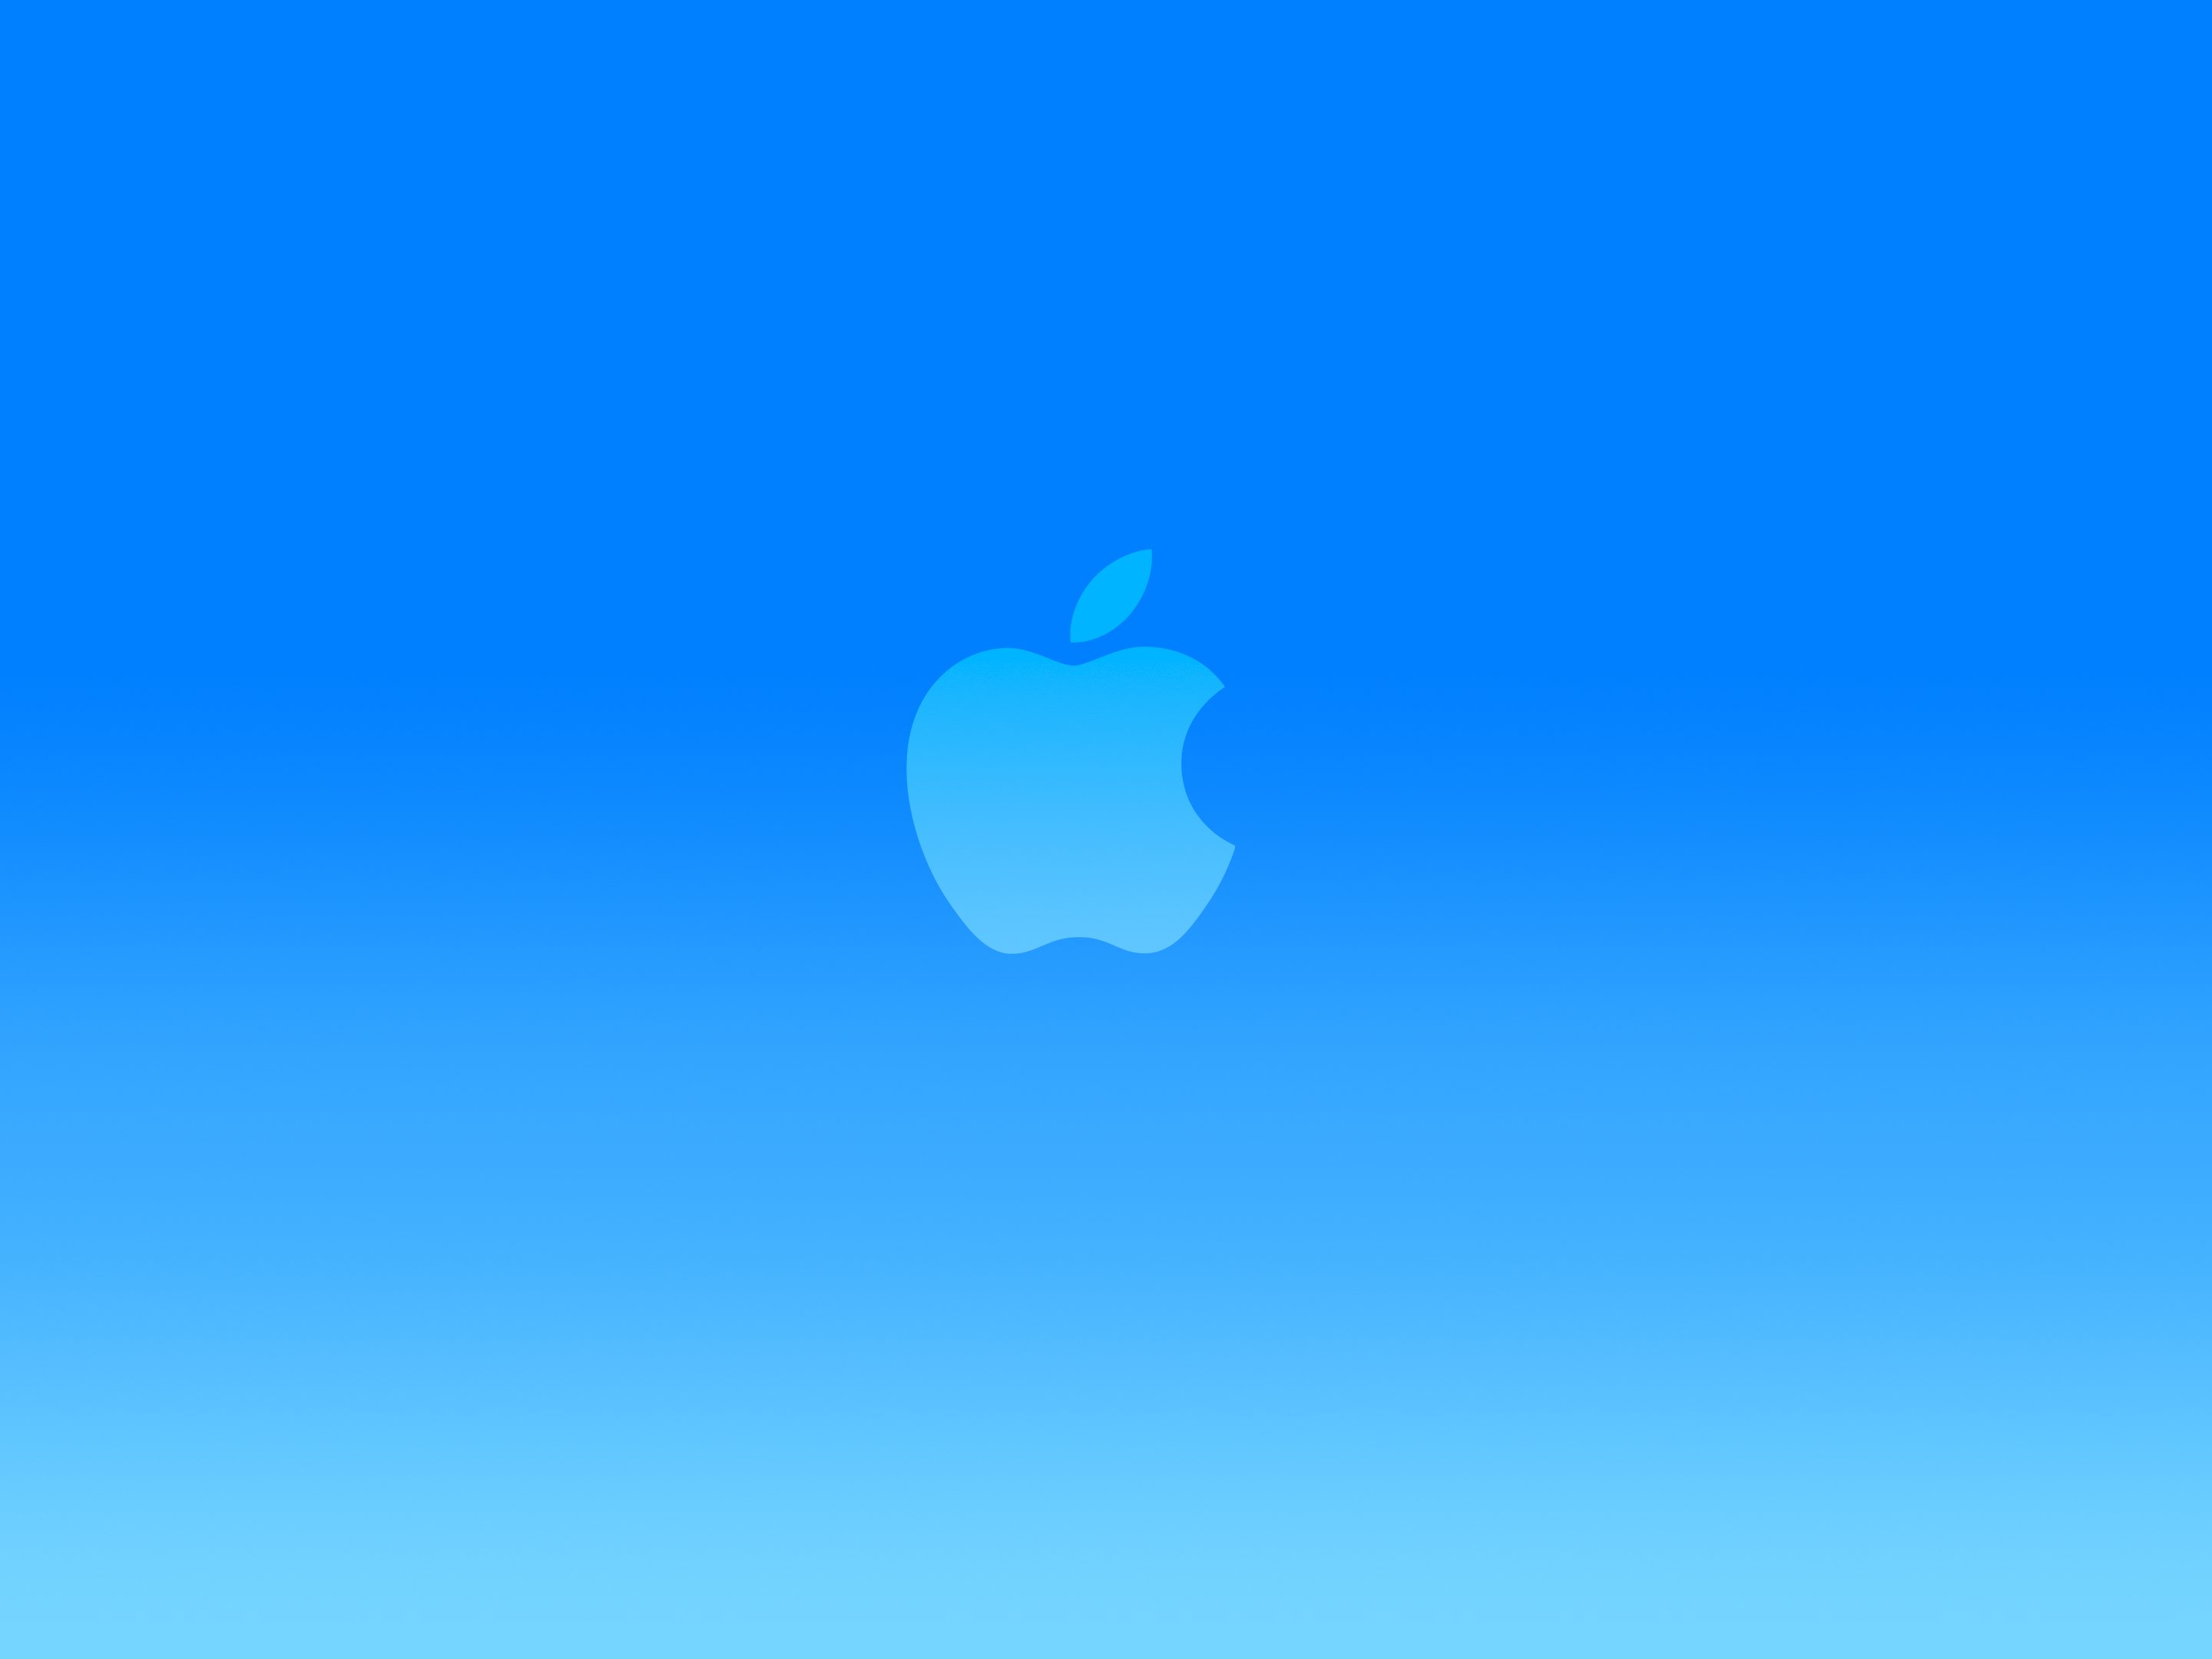 bright blue apple logo wallpaper